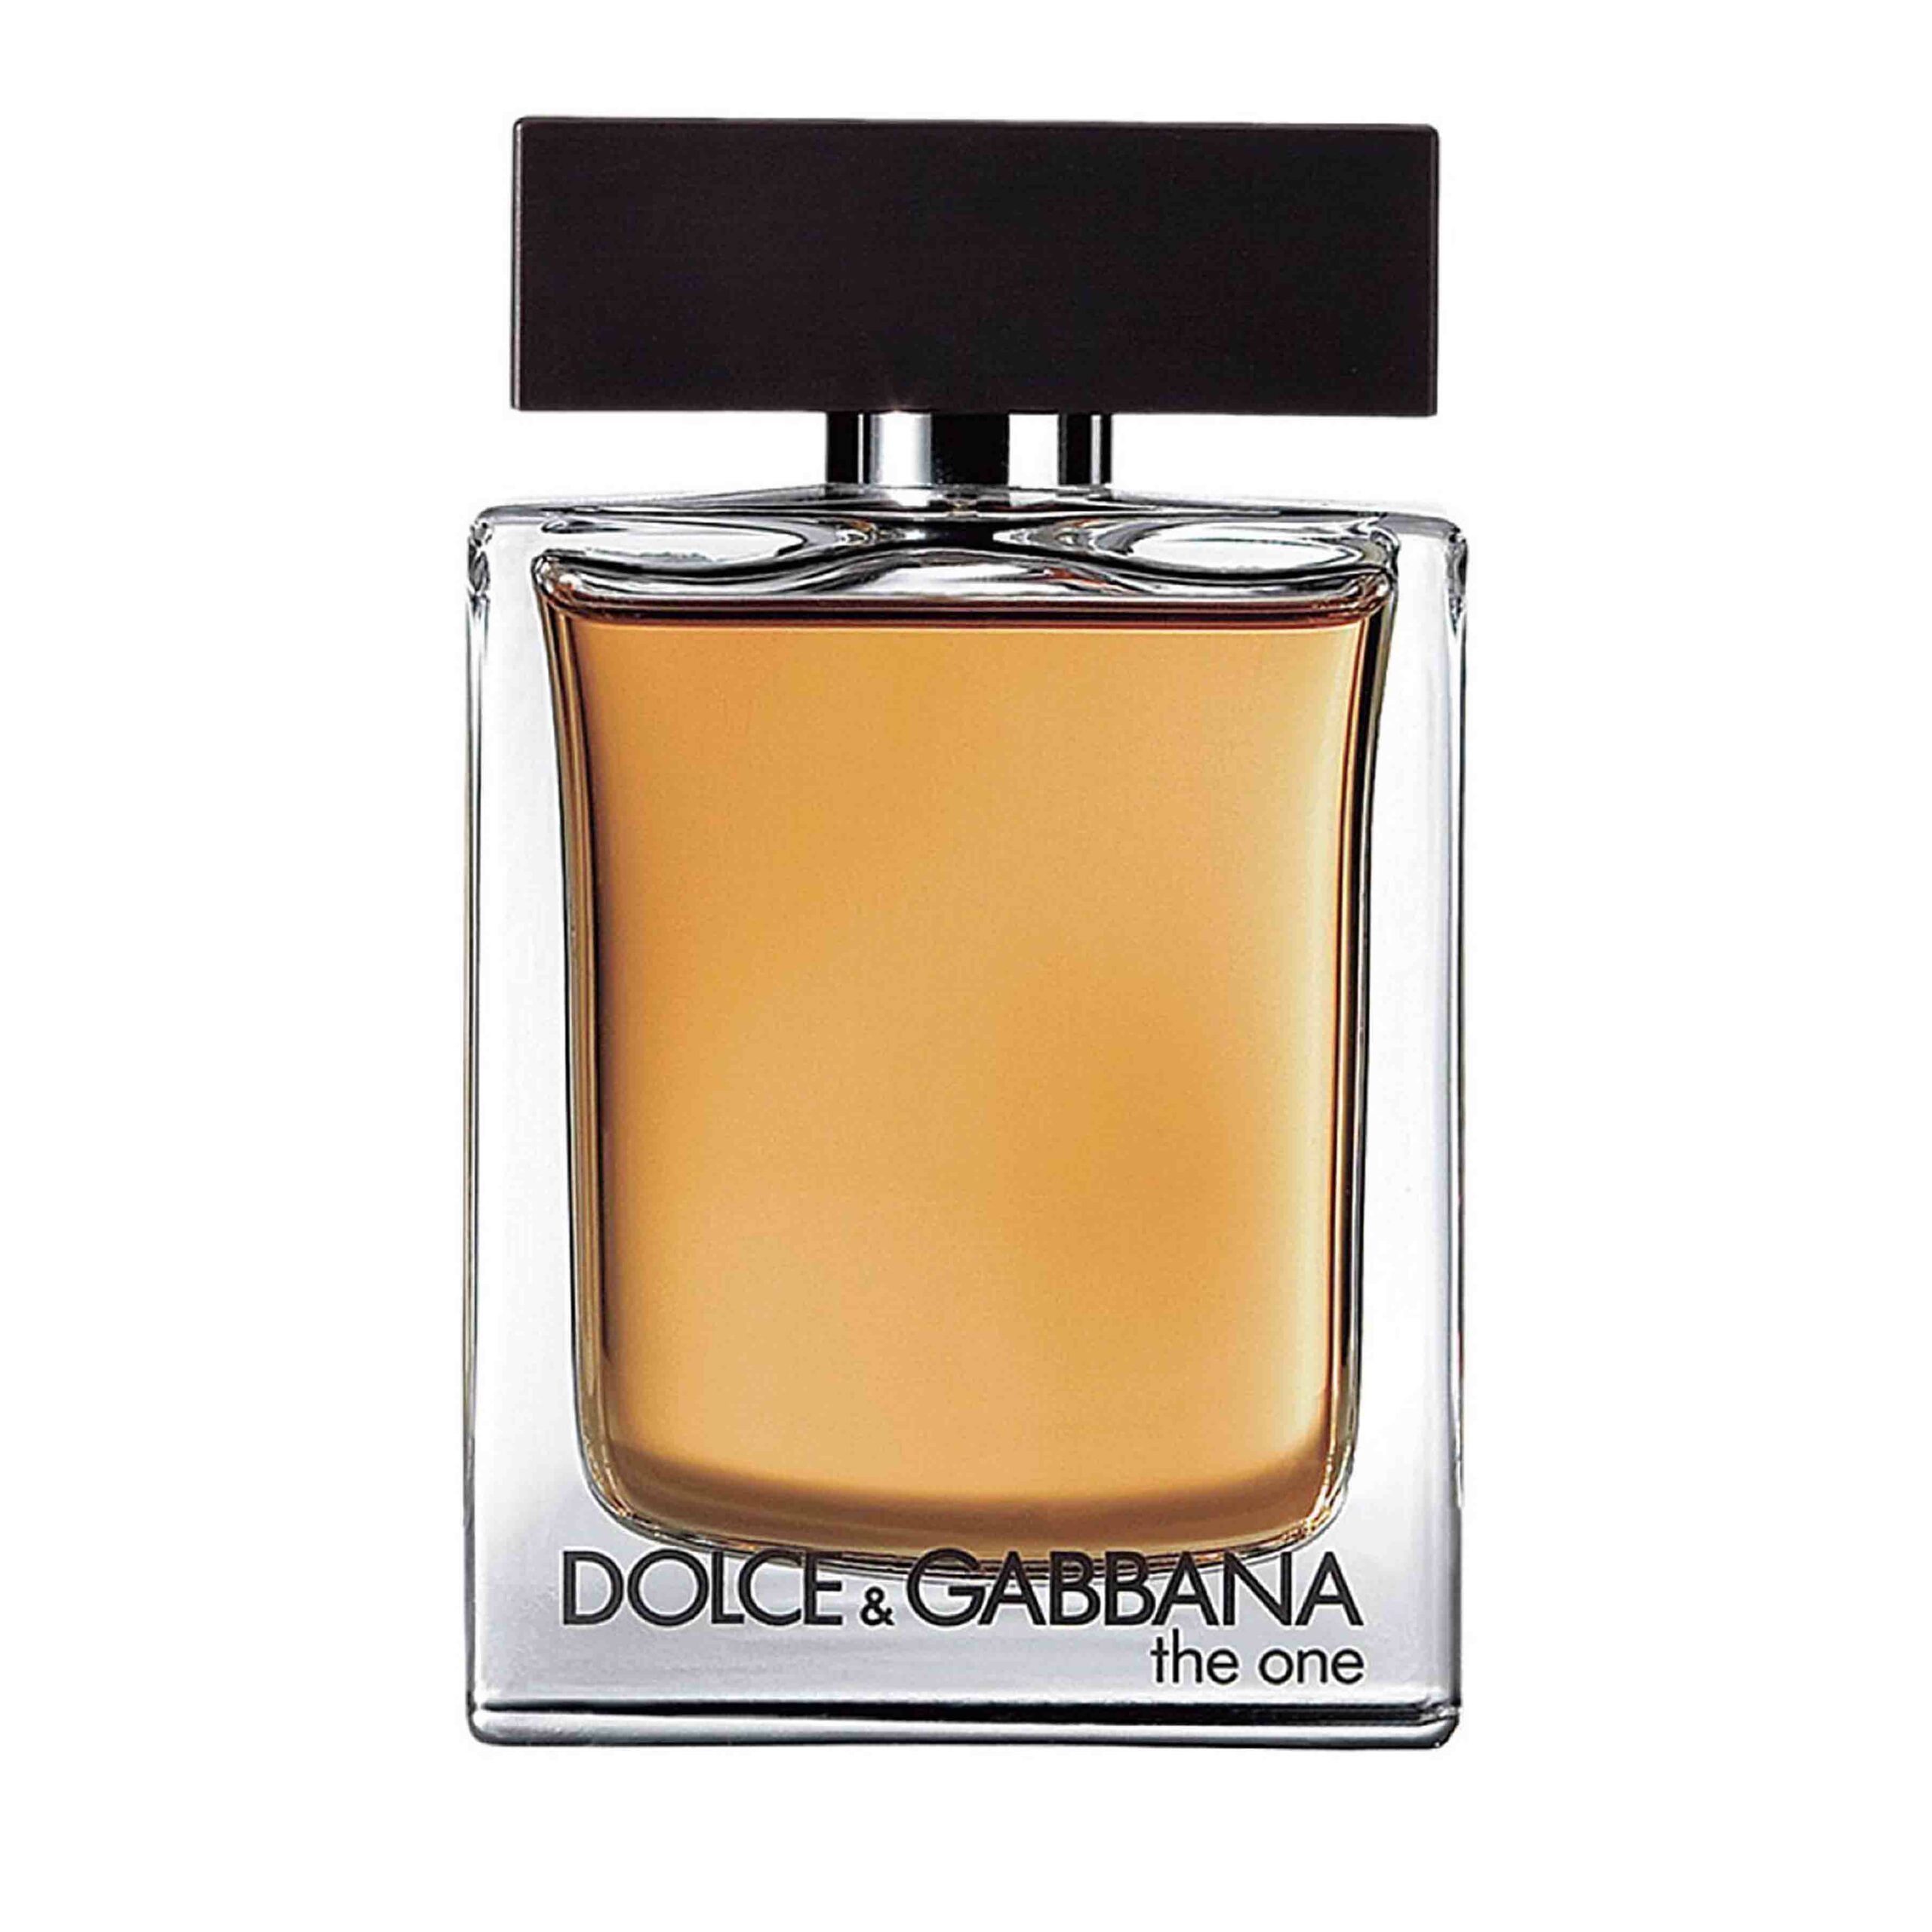 Die besten Parfums für Männer 2021: Dolce & Gabbana - The one